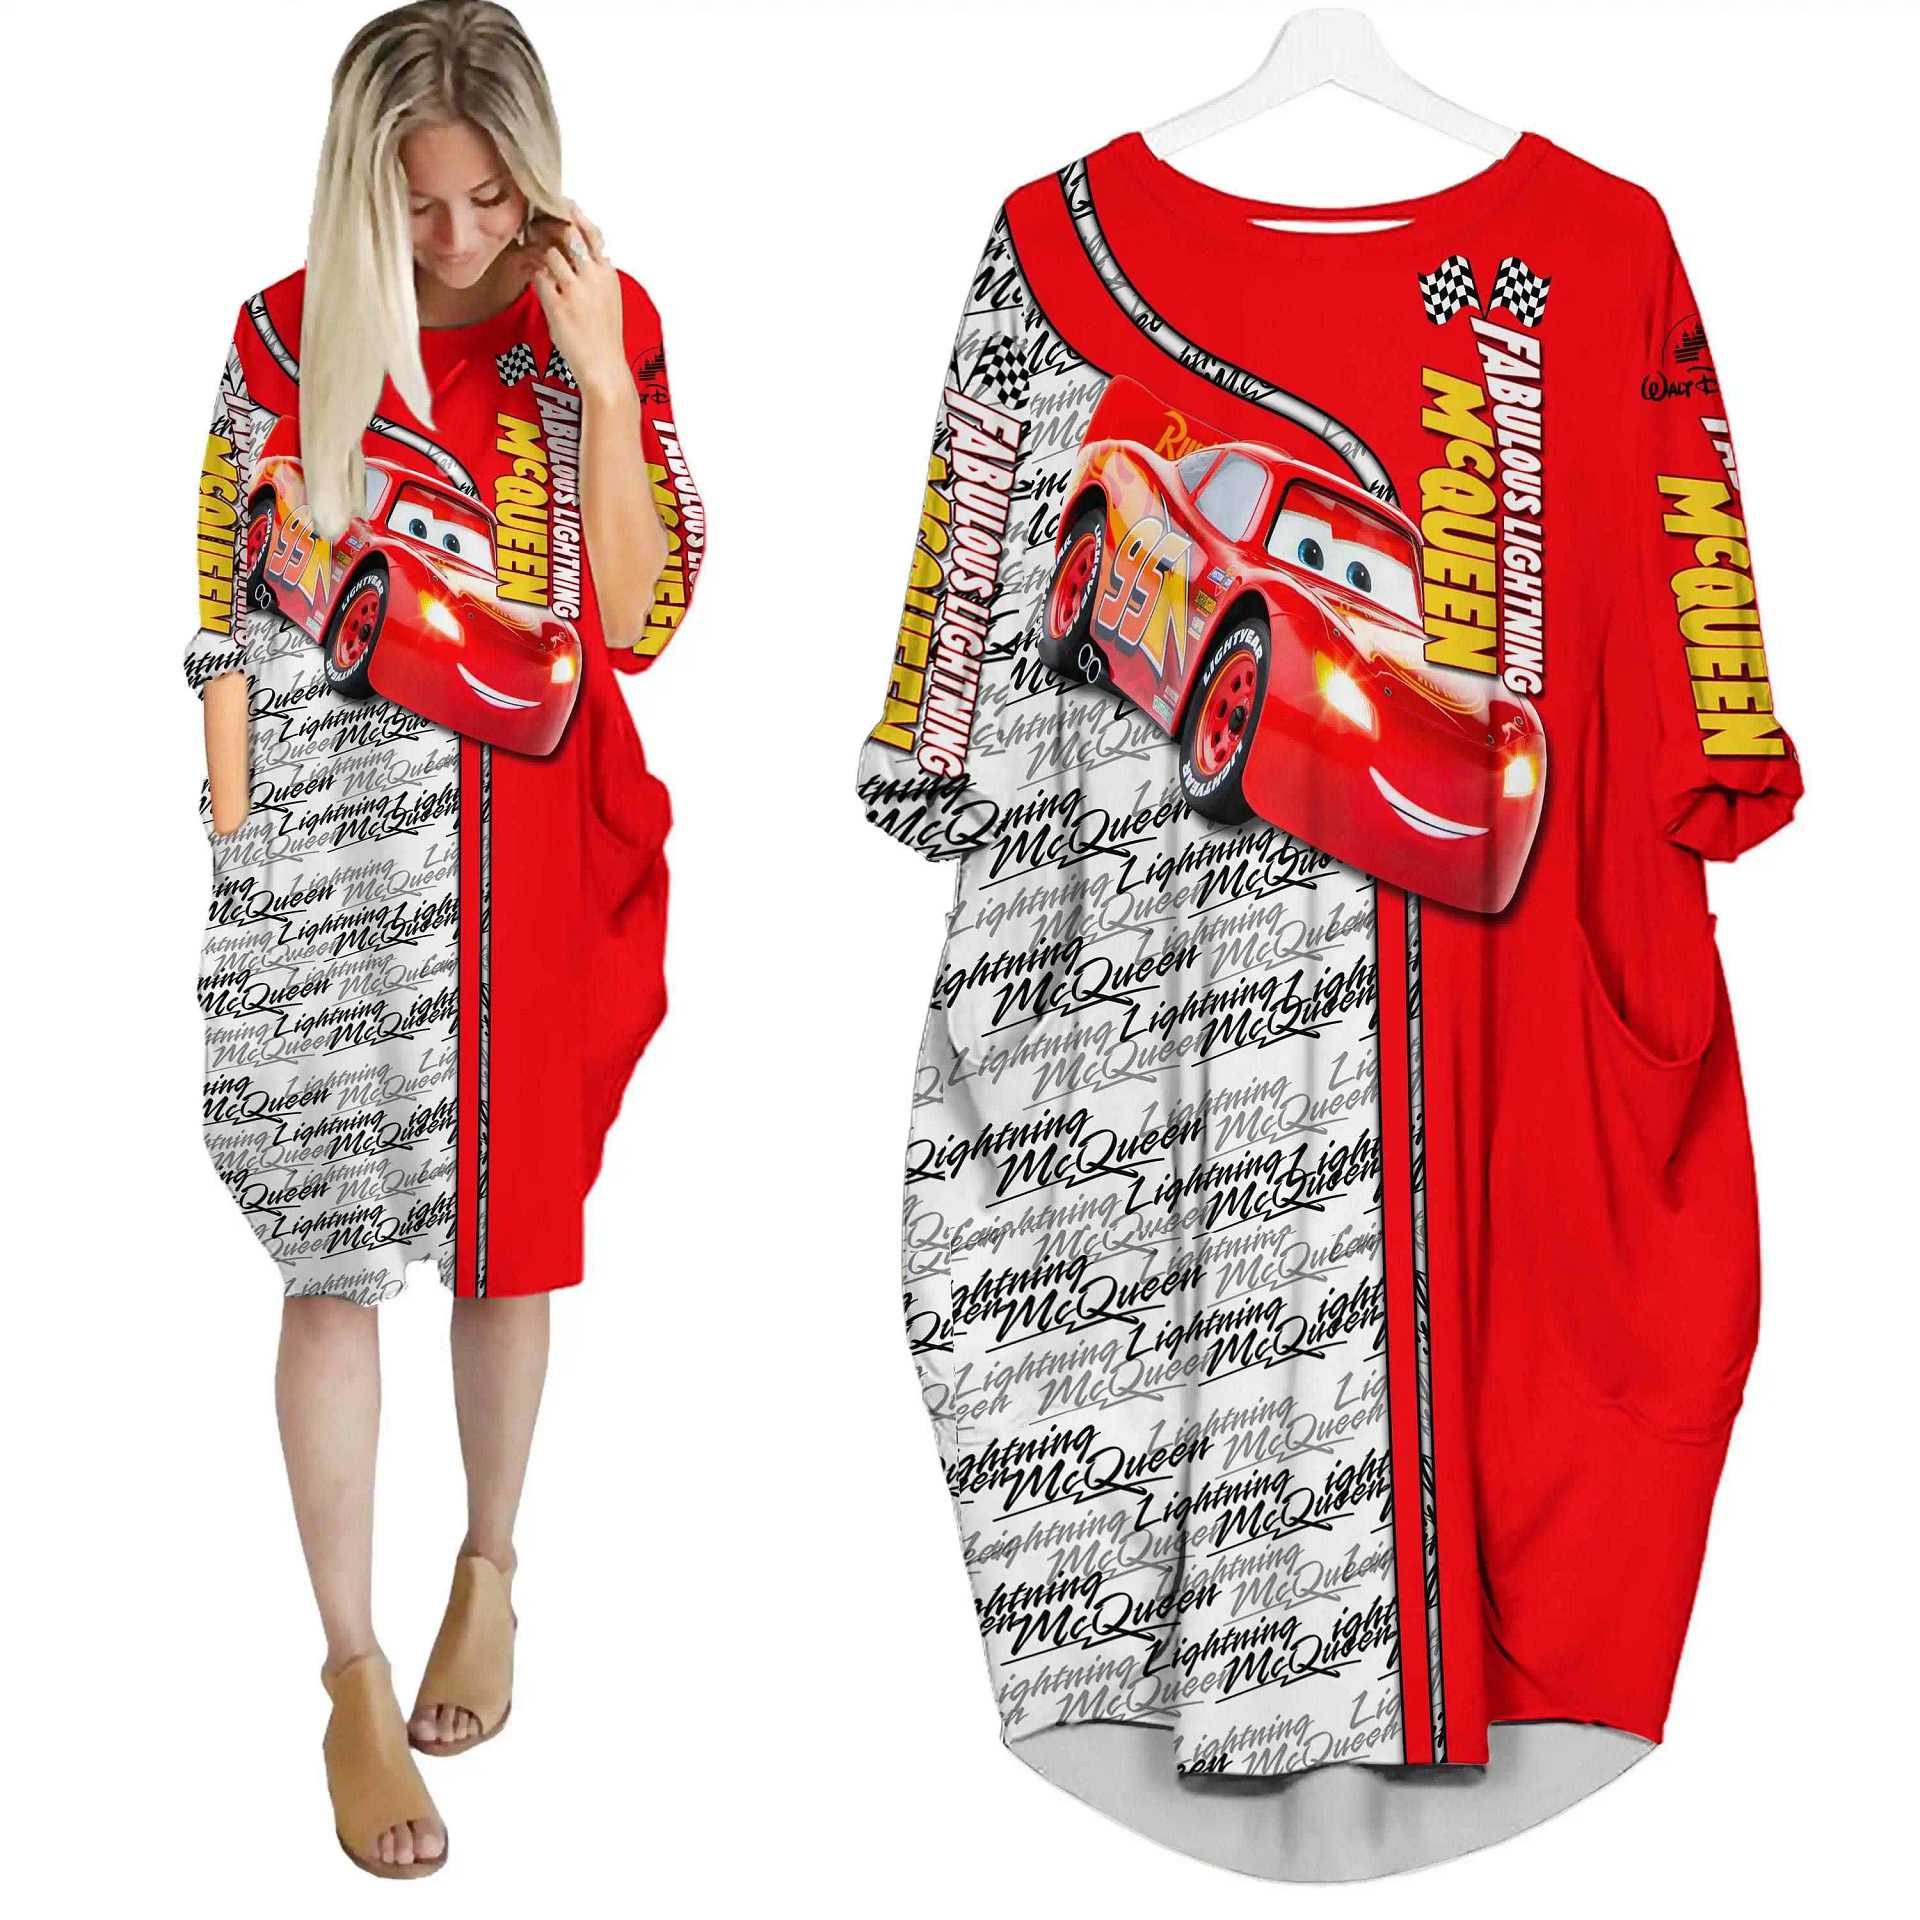 Fabulous Lightning Mcqueen Red Disney Cartoon Summer Vacation Outfit Women Girl Batwing Pocket Dress